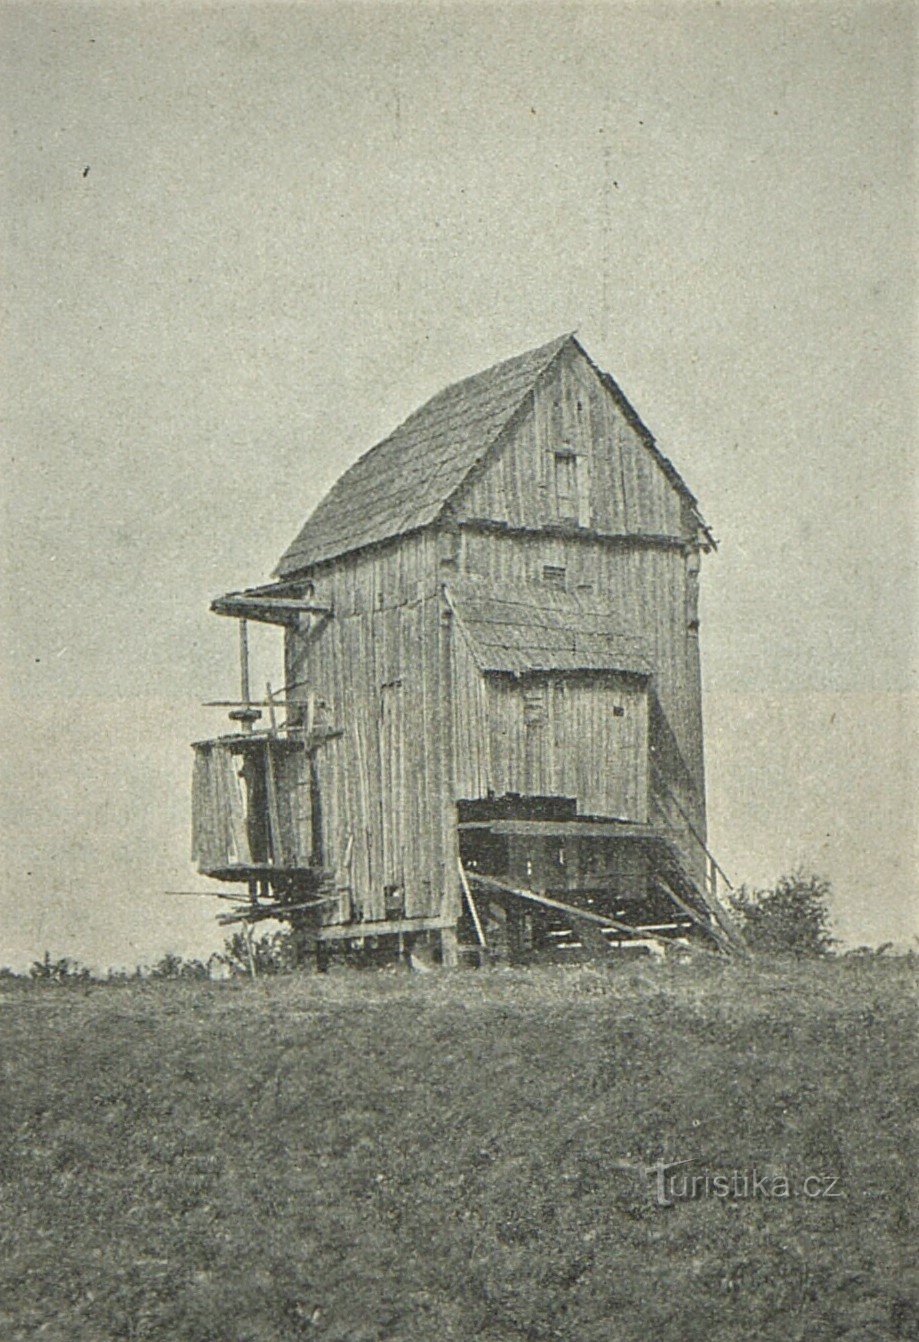 Fotografie dobřenického větrného mlýna z roku 1909